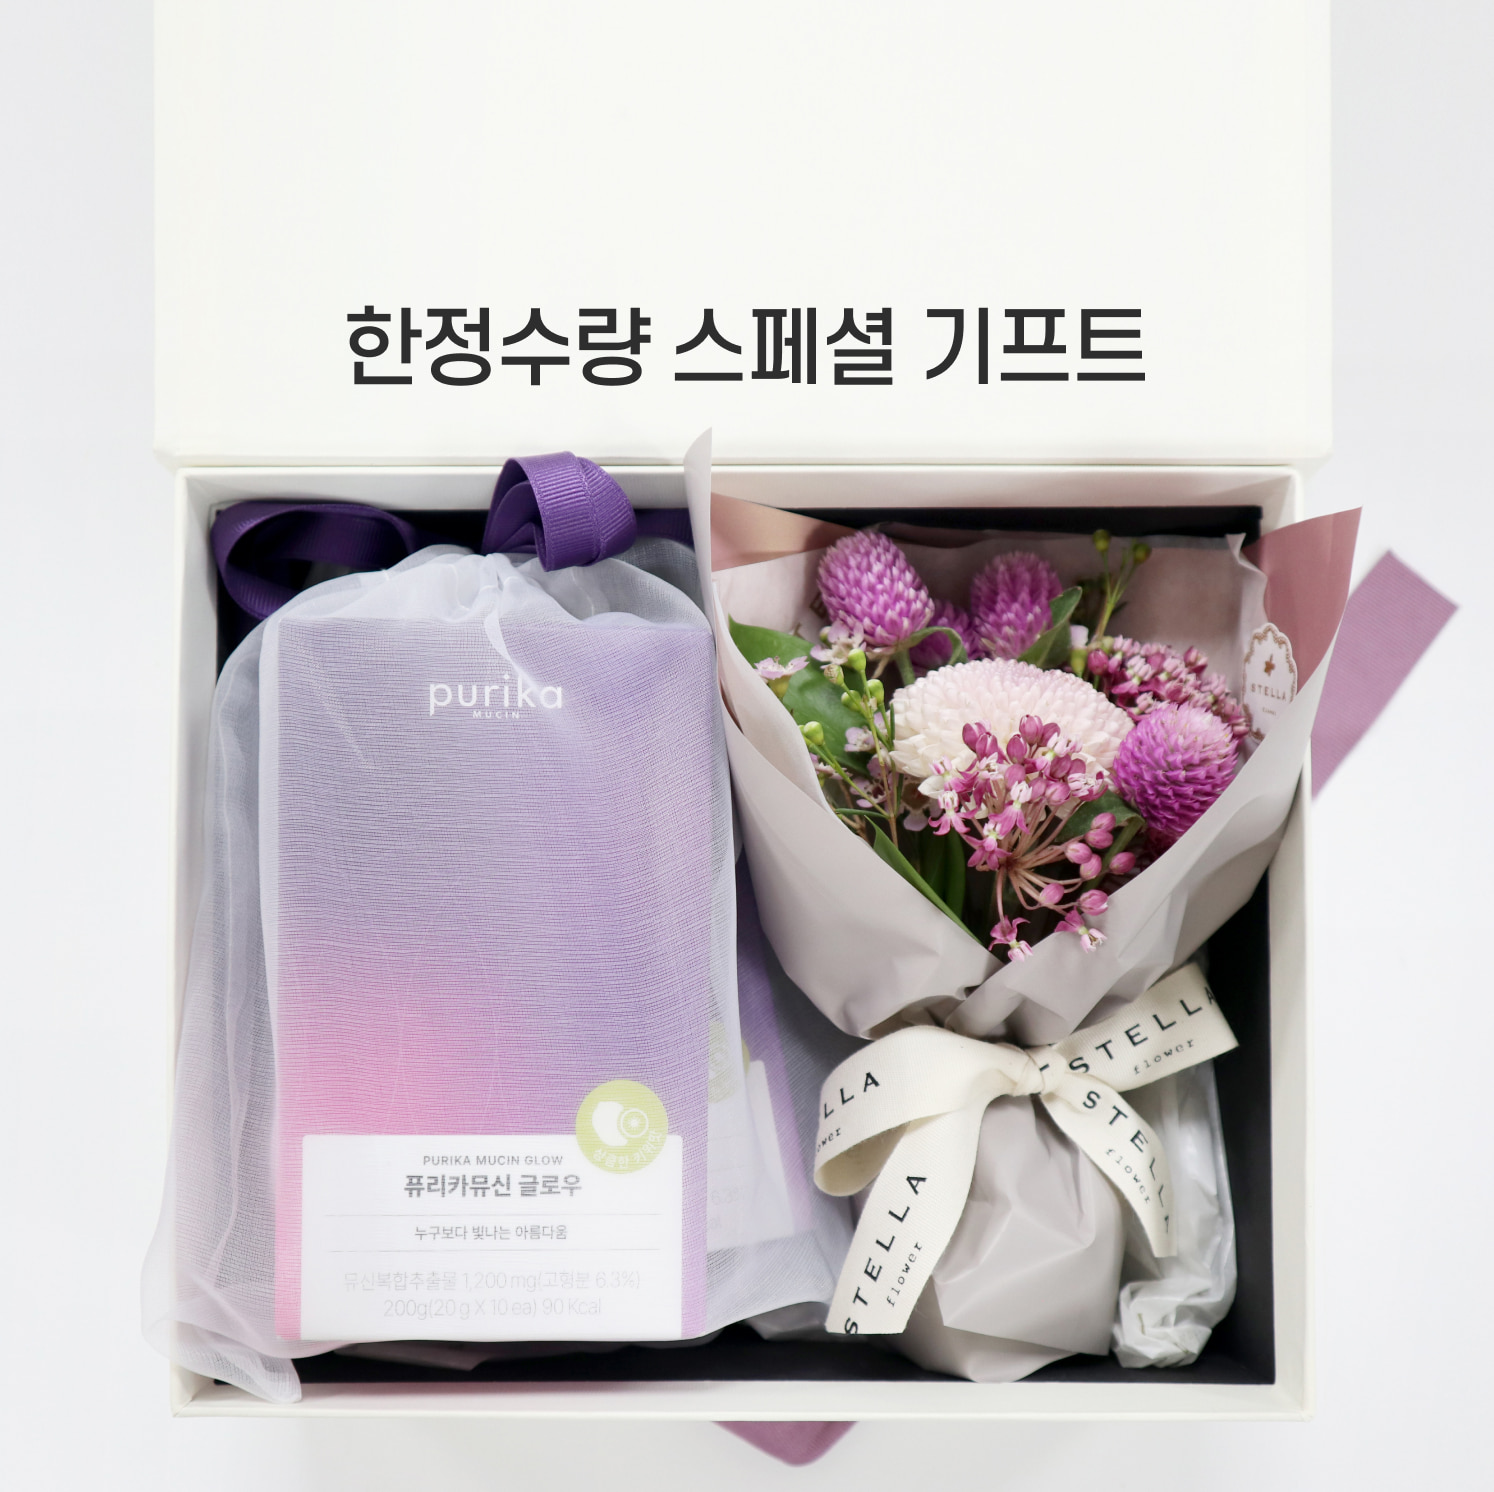 뮤신Glow 선물세트 (2box, 20포 + 프리미엄 미니부케)